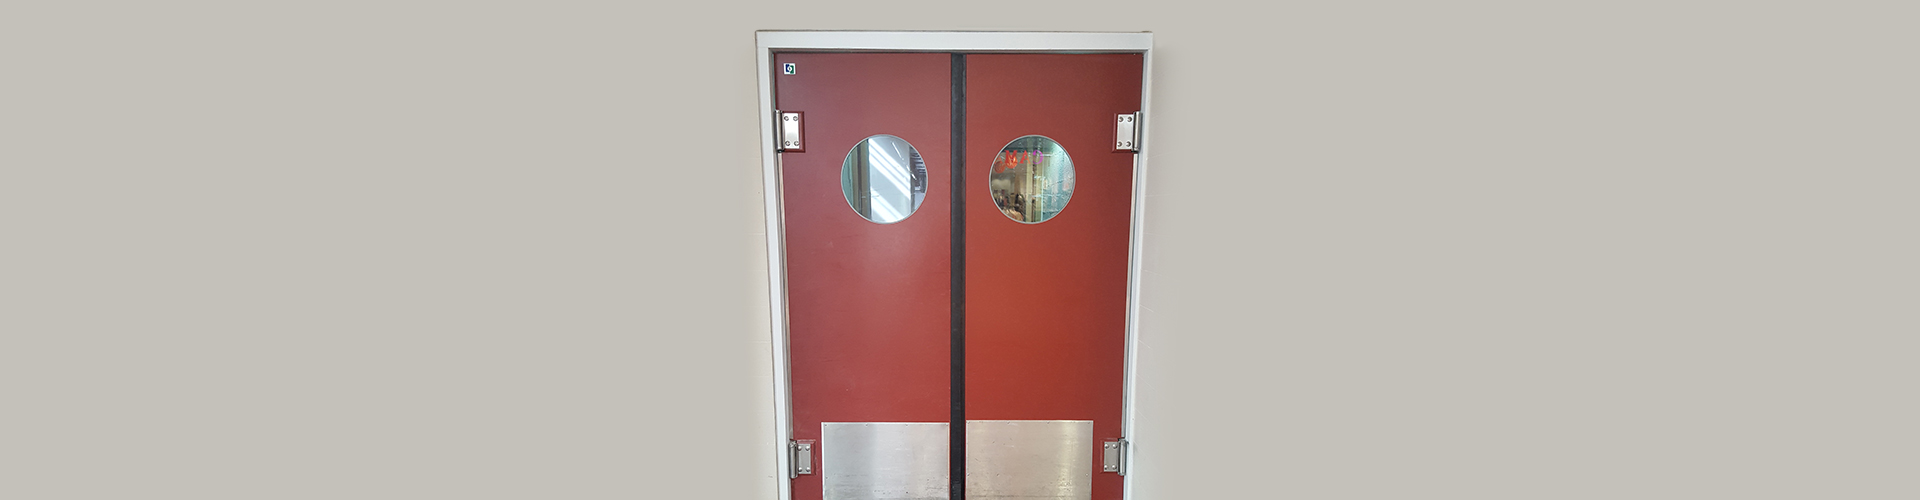 SPENLE red two-way polyethylene door